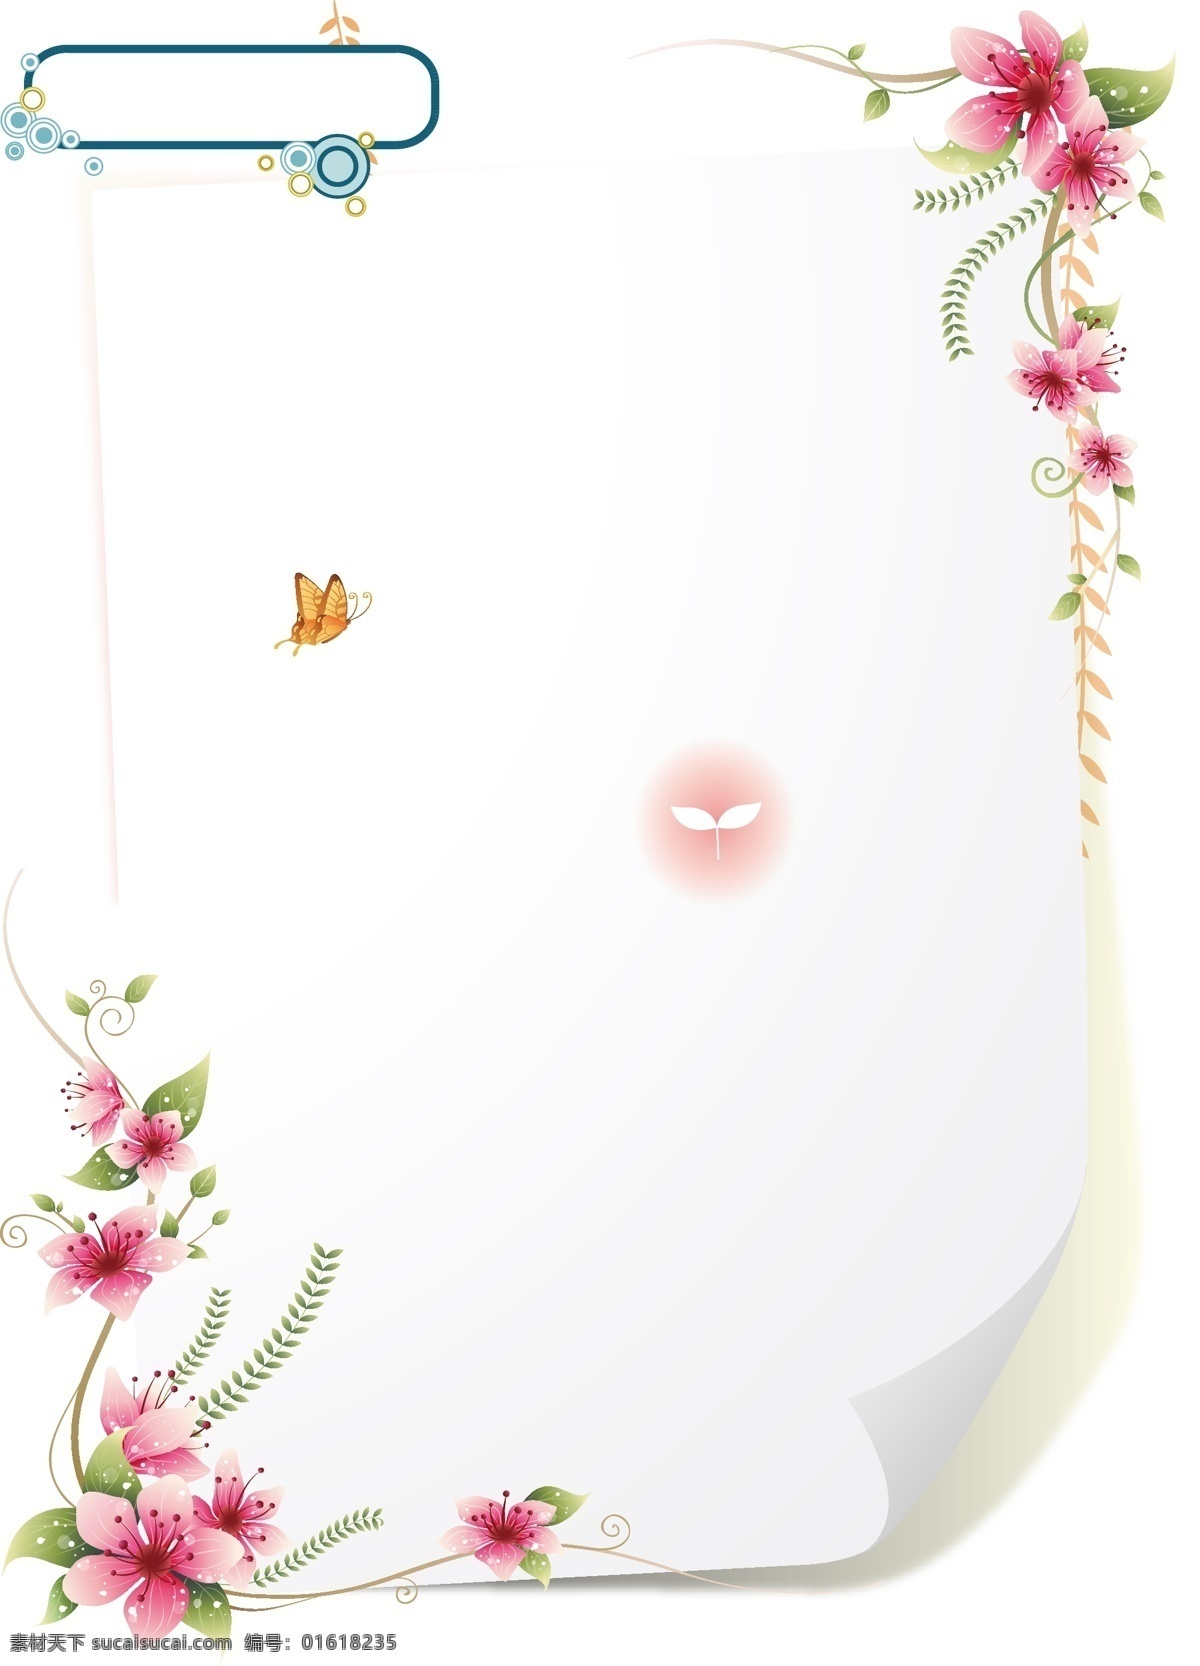 清新 信纸 花边 元素 手绘 粉色 花朵 边框 绿藤 白色 卷边